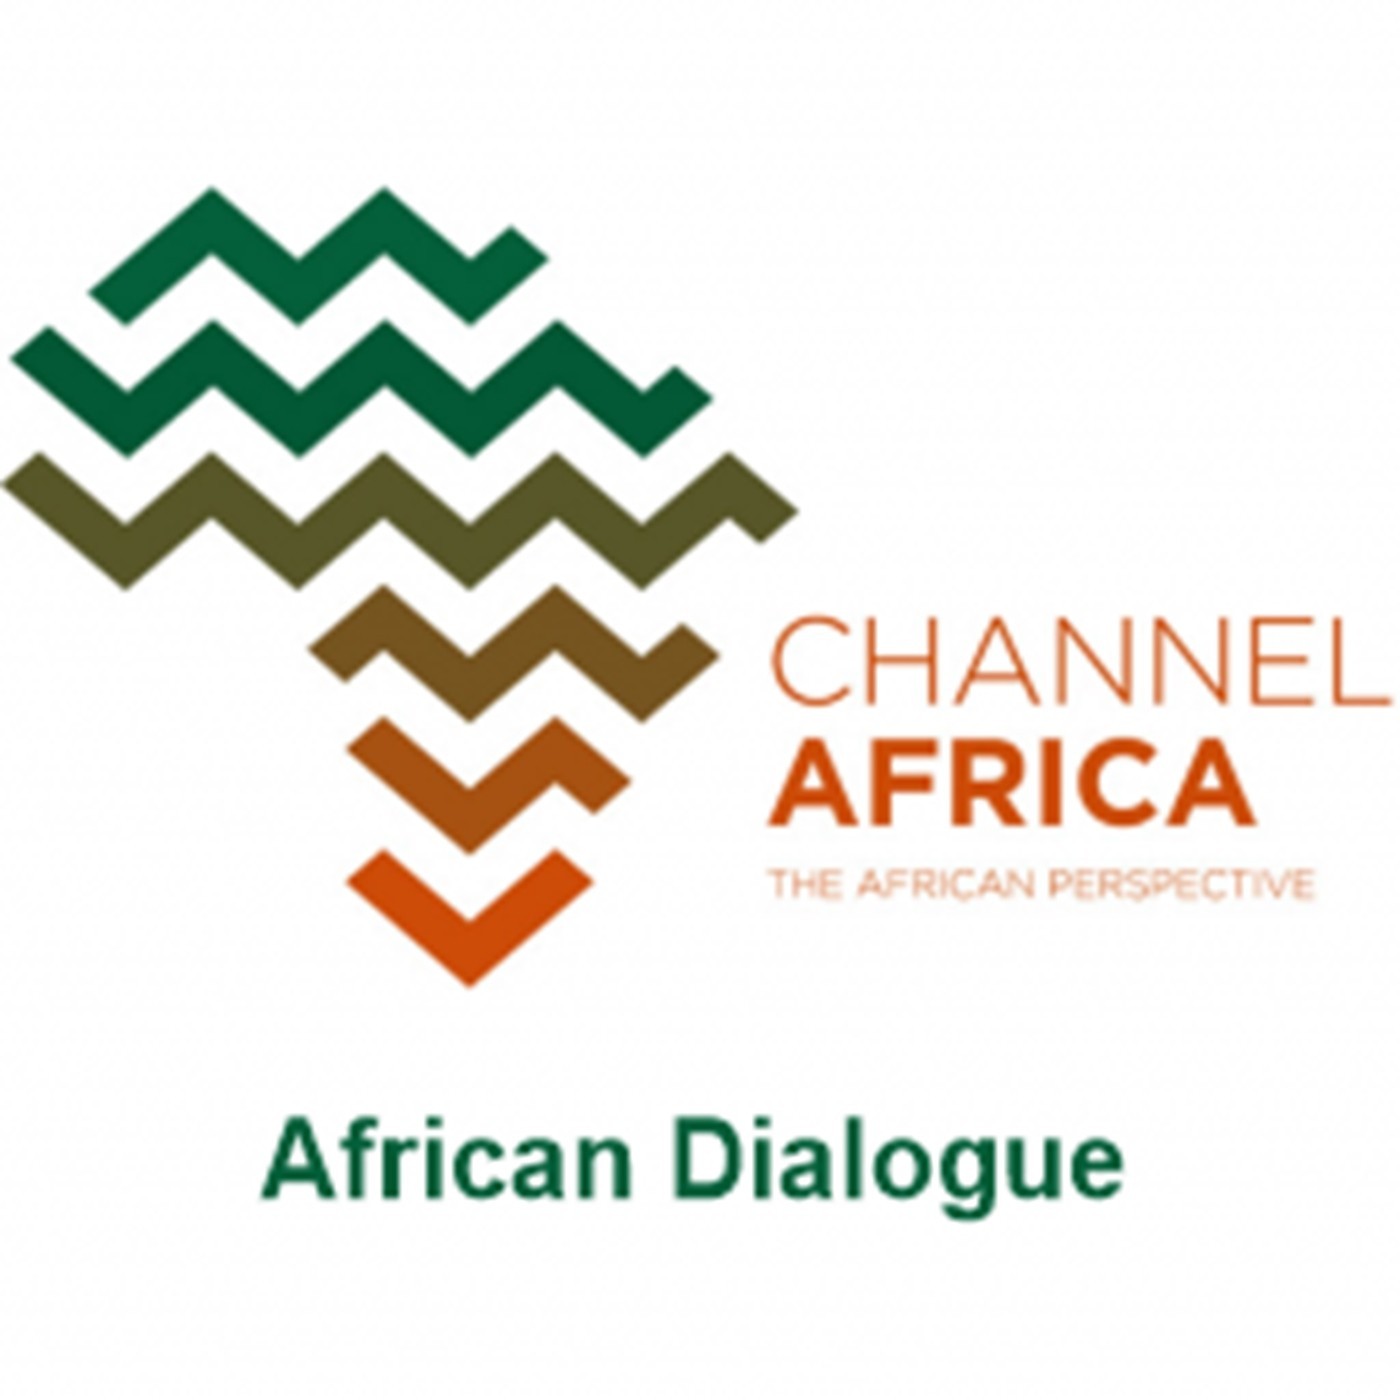 African Dialogue